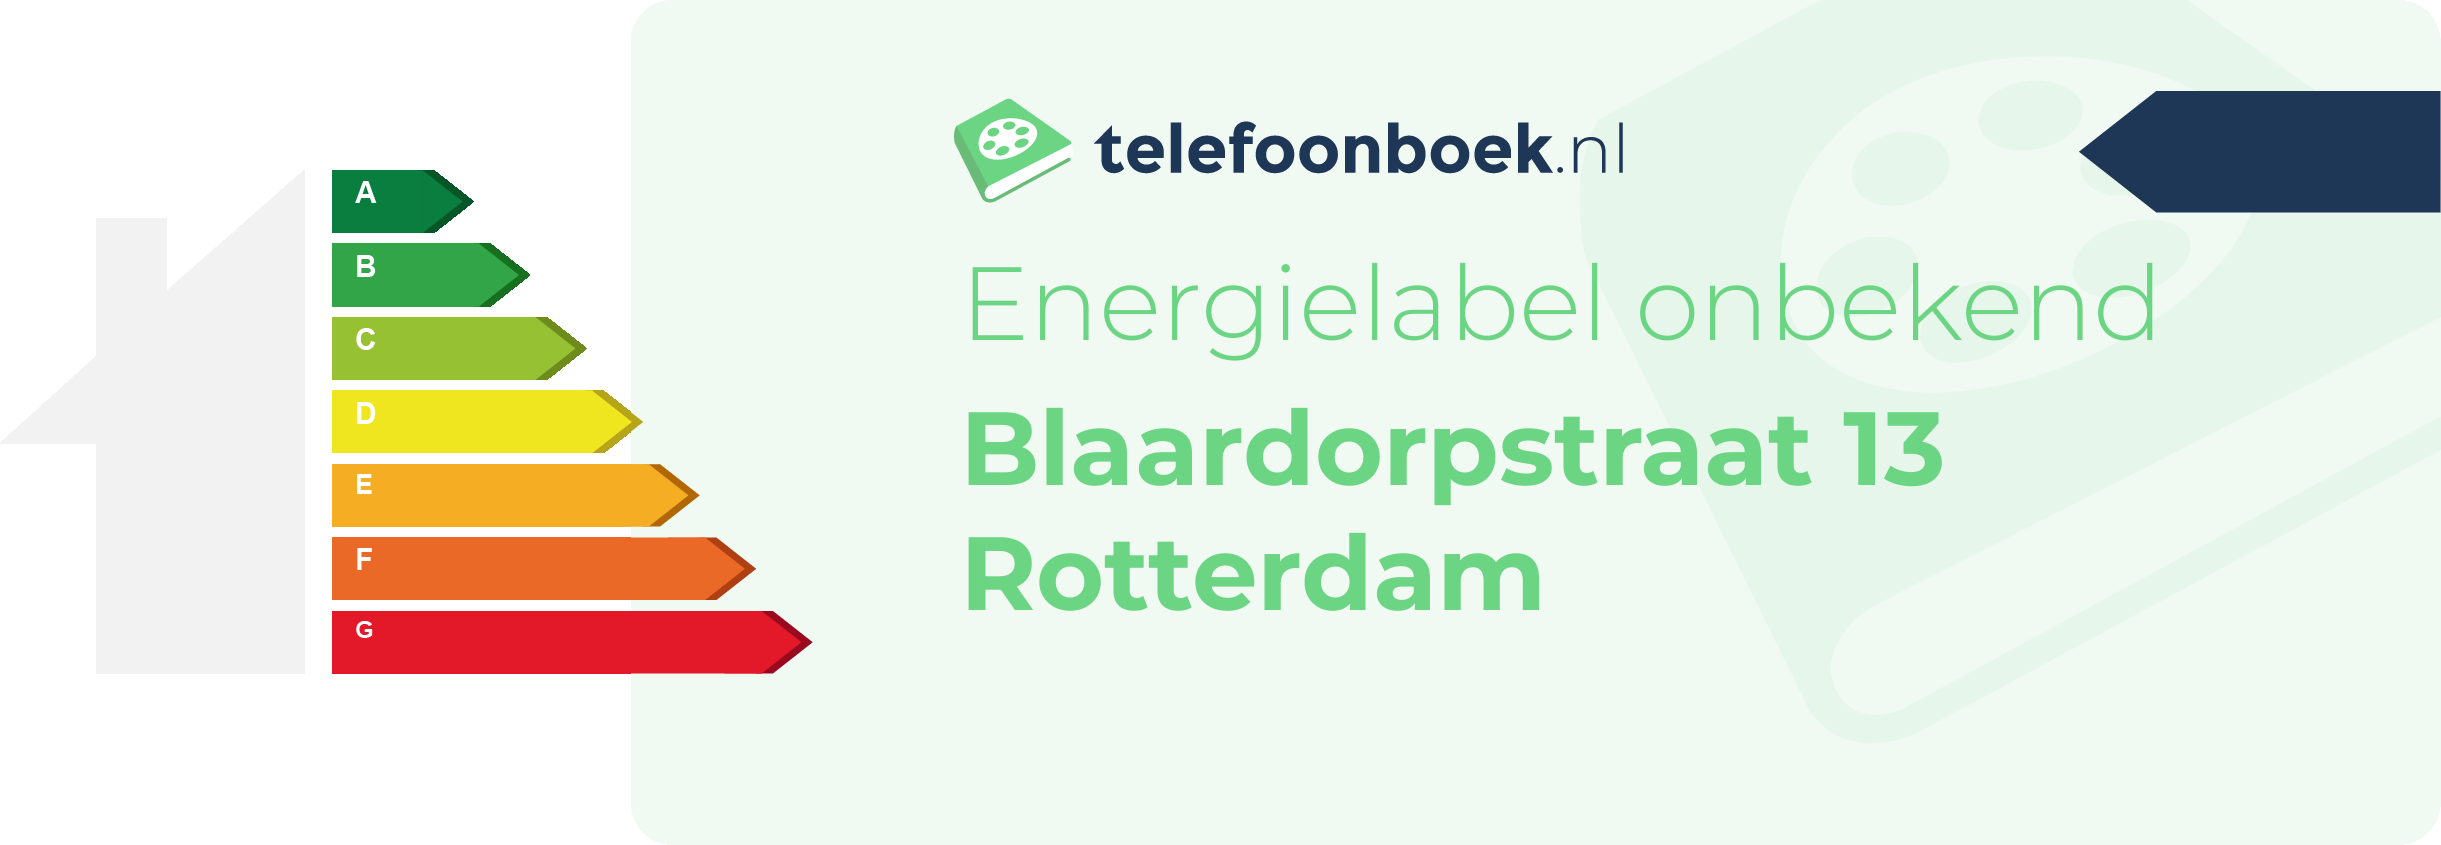 Energielabel Blaardorpstraat 13 Rotterdam